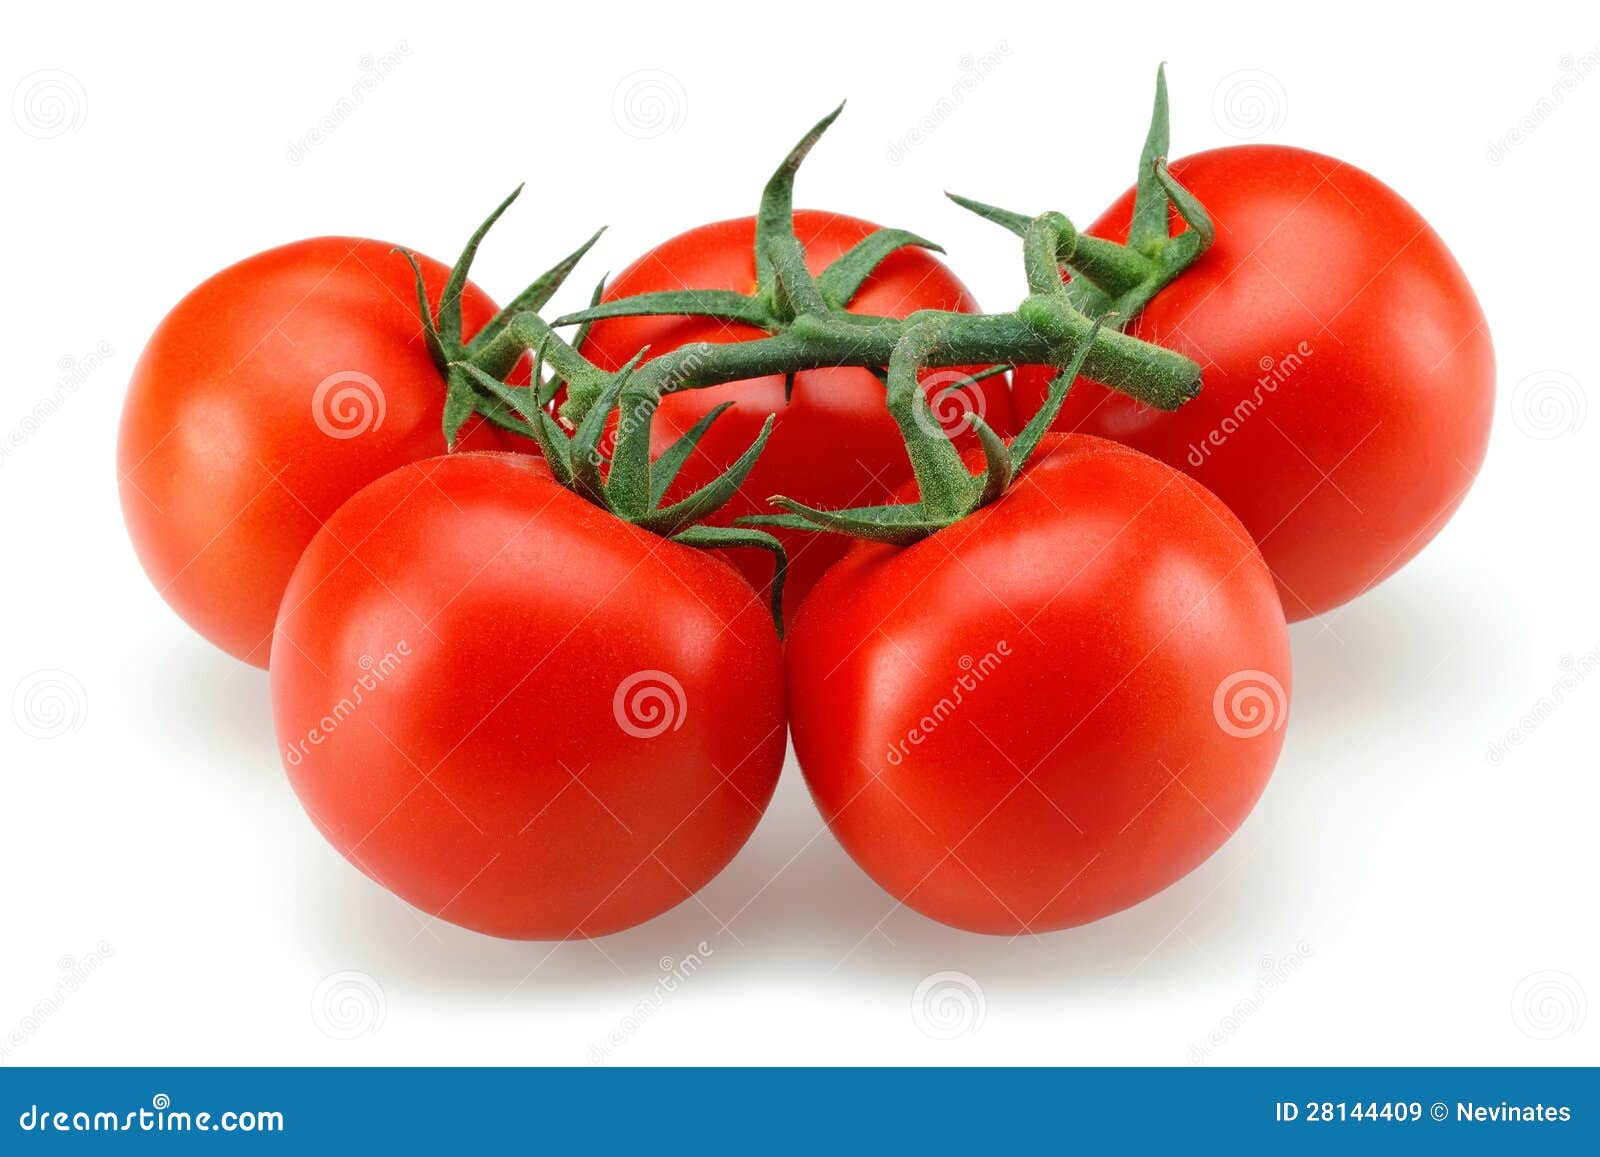 tomato group